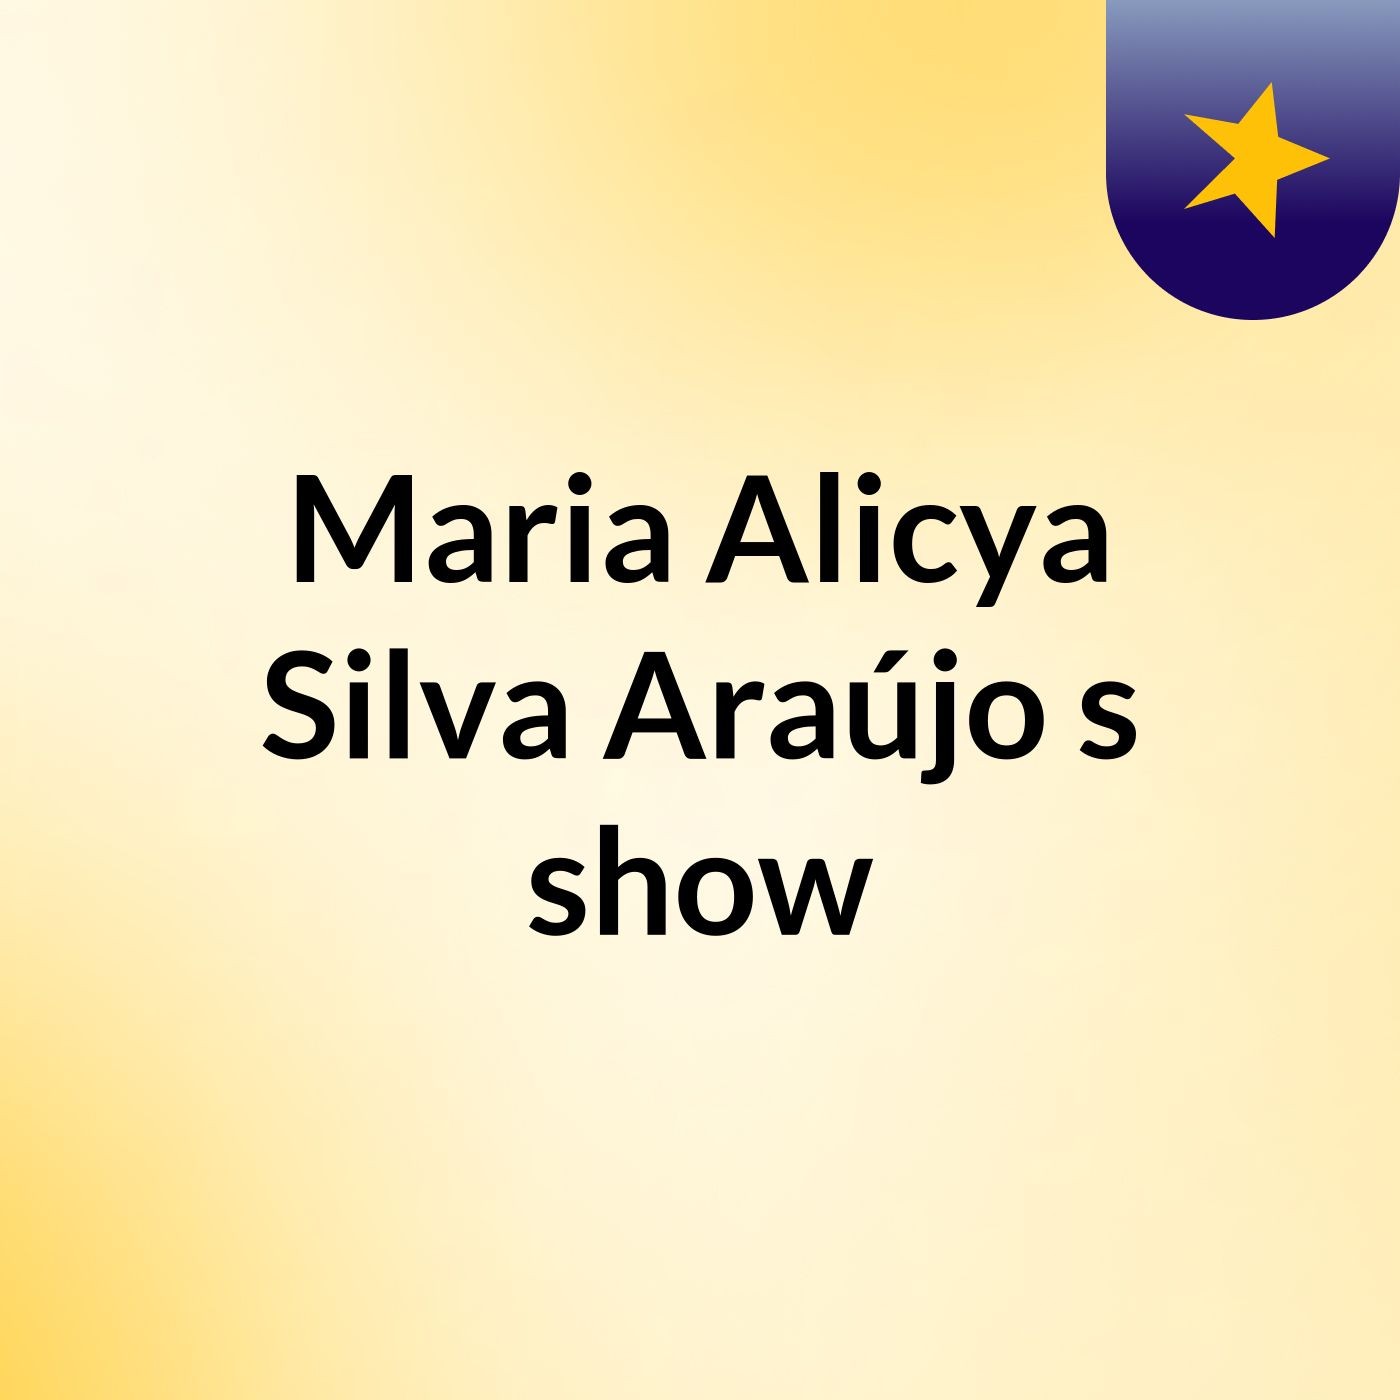 Maria Alicya Silva Araújo's show